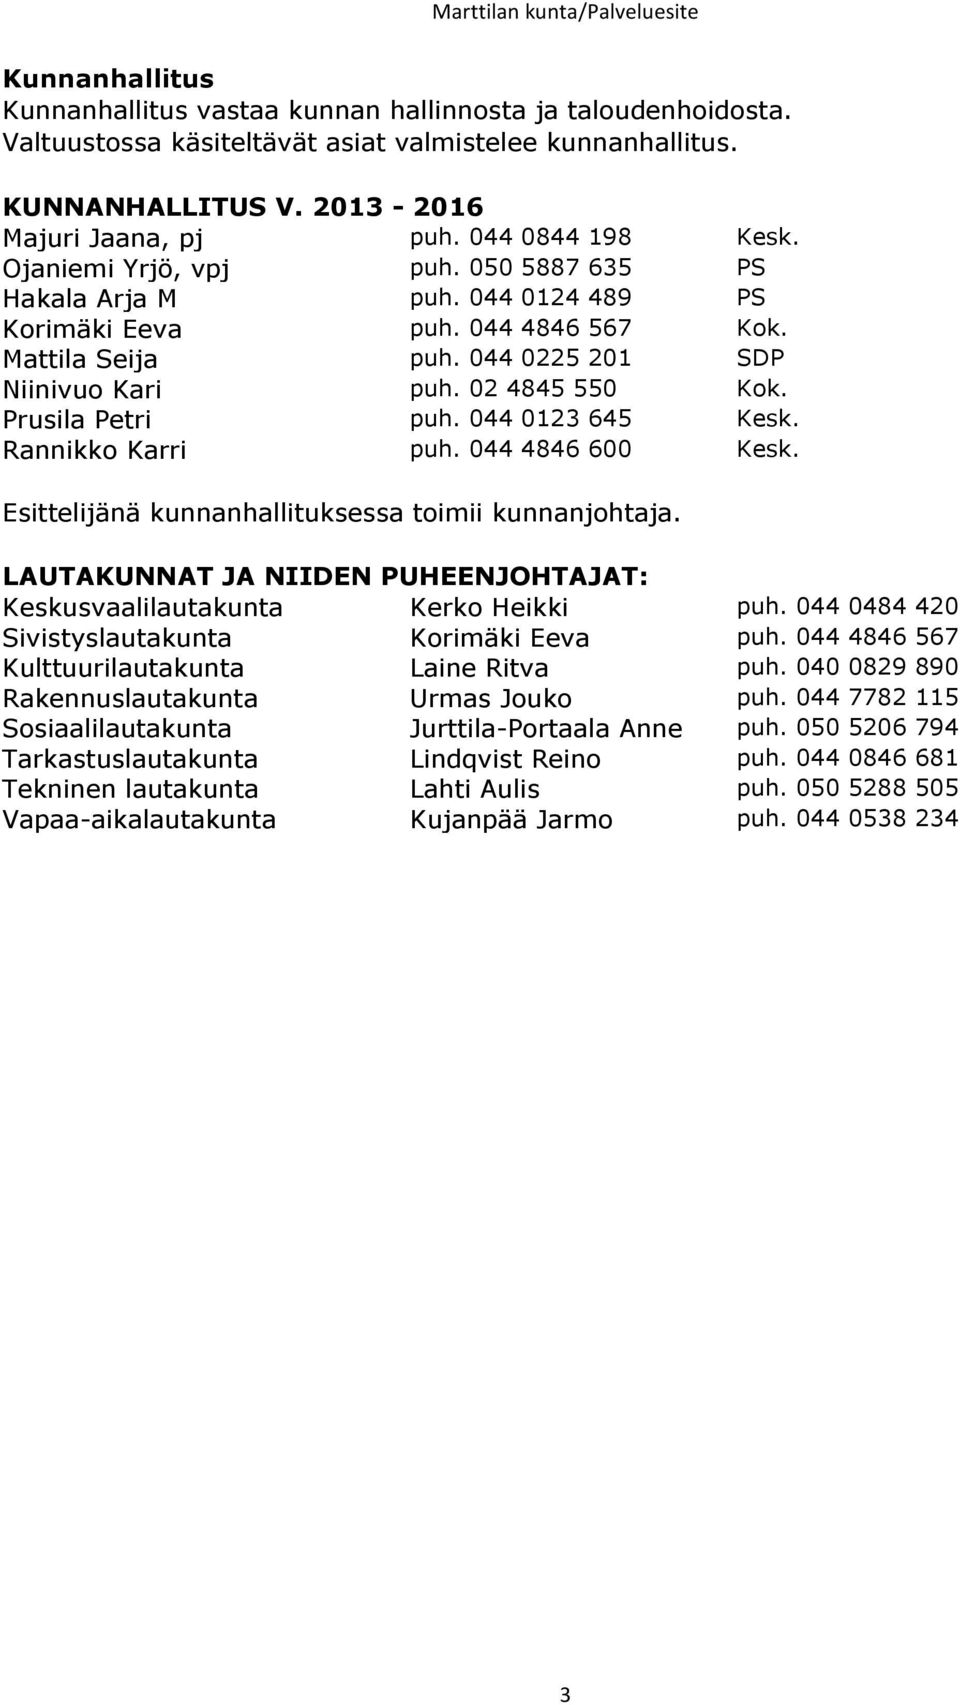 02 4845 550 Kok. Prusila Petri puh. 044 0123 645 Kesk. Rannikko Karri puh. 044 4846 600 Kesk. Esittelijänä kunnanhallituksessa toimii kunnanjohtaja.